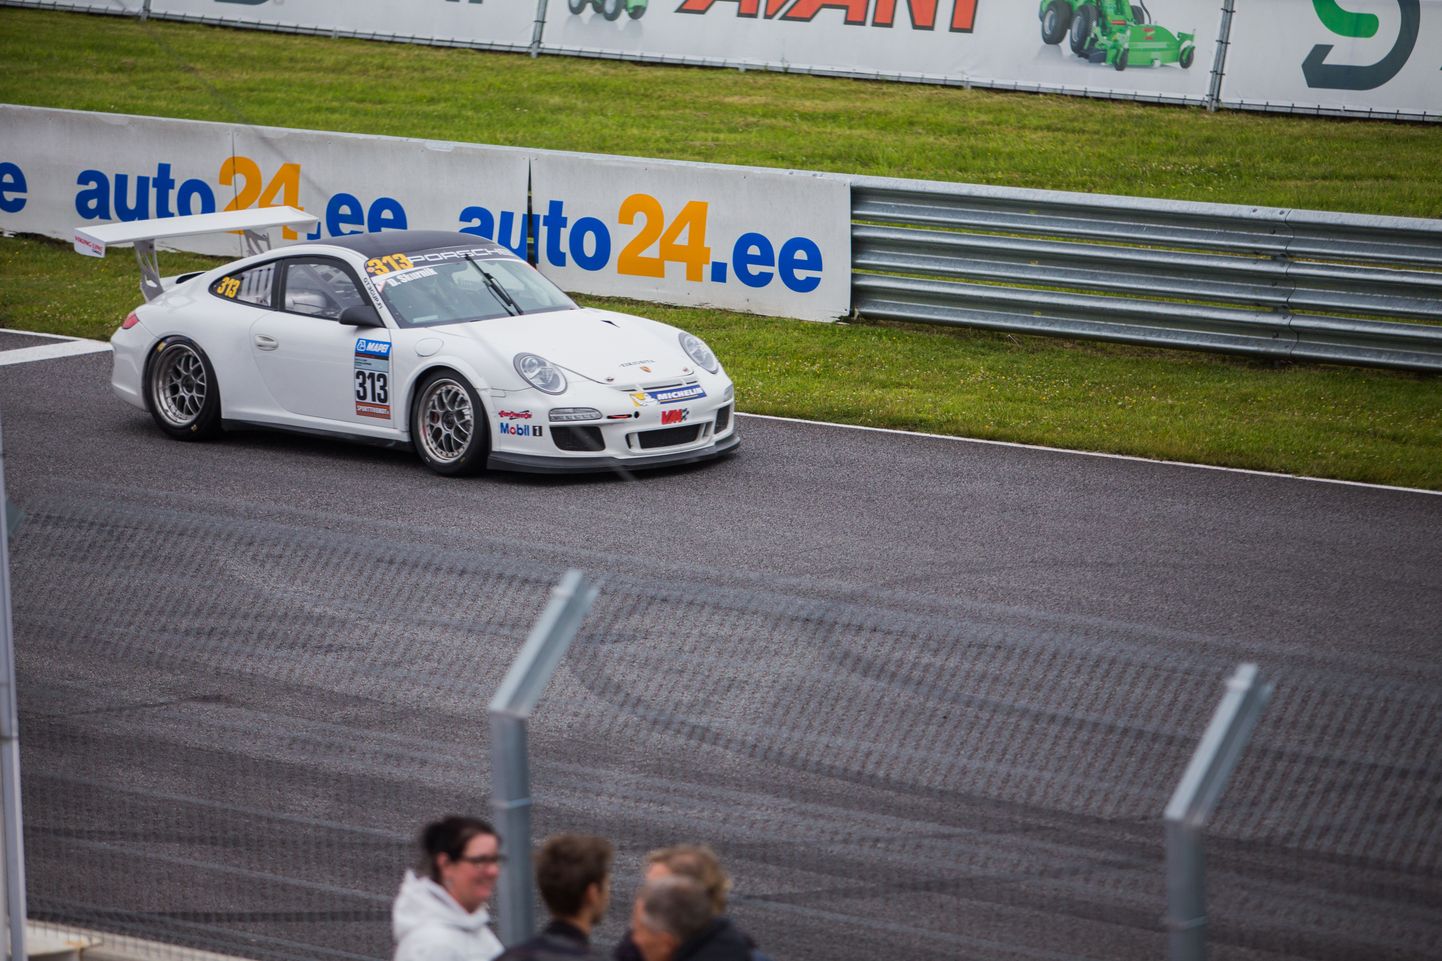 Porsche GT3 Cup Challenge 1 race, Auto24 ringrada